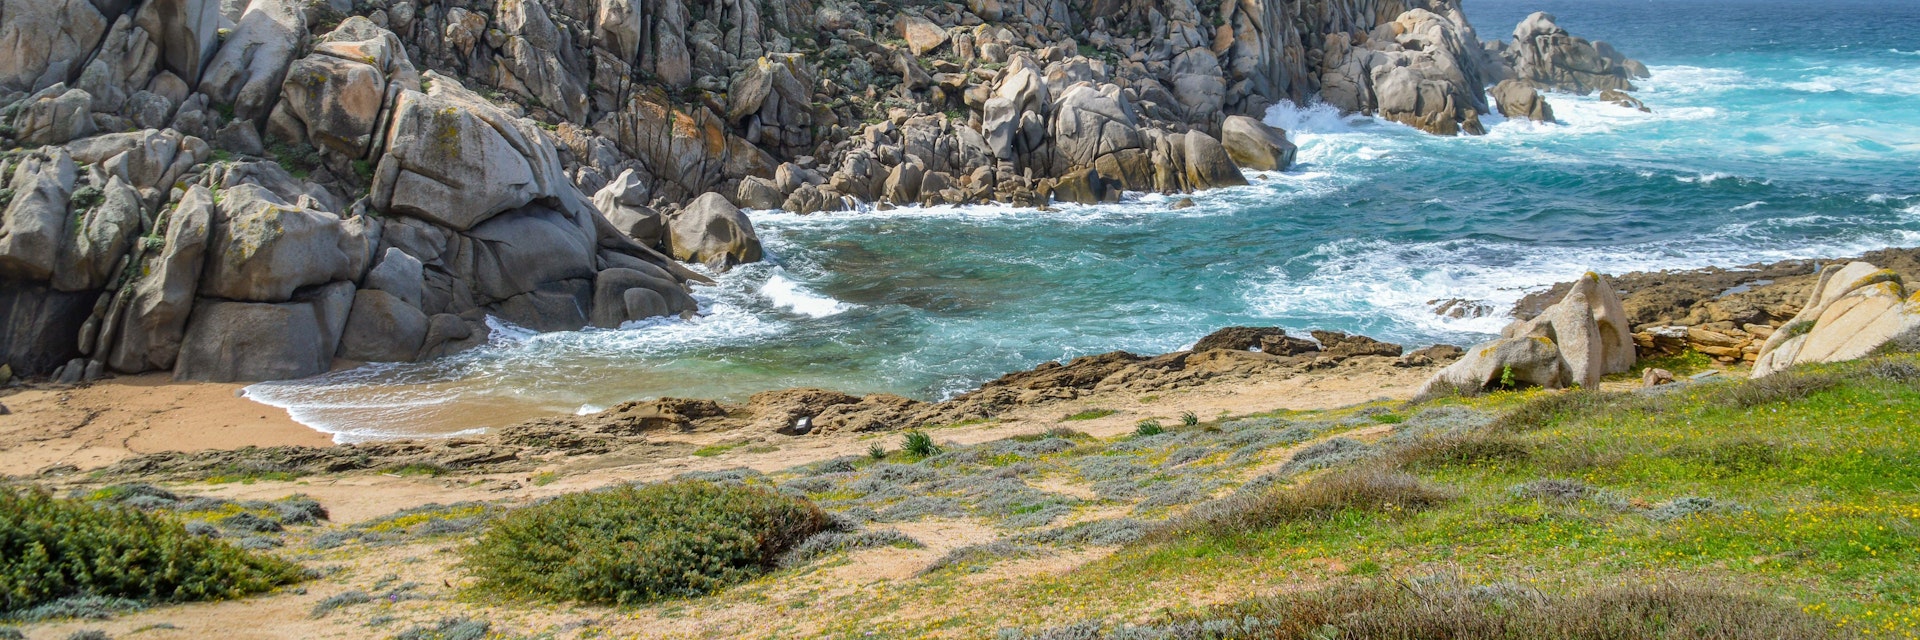 Rocky shore in Valle della Luna near Capo Testa, near Santa Teresa di Gallura, Sardinia.